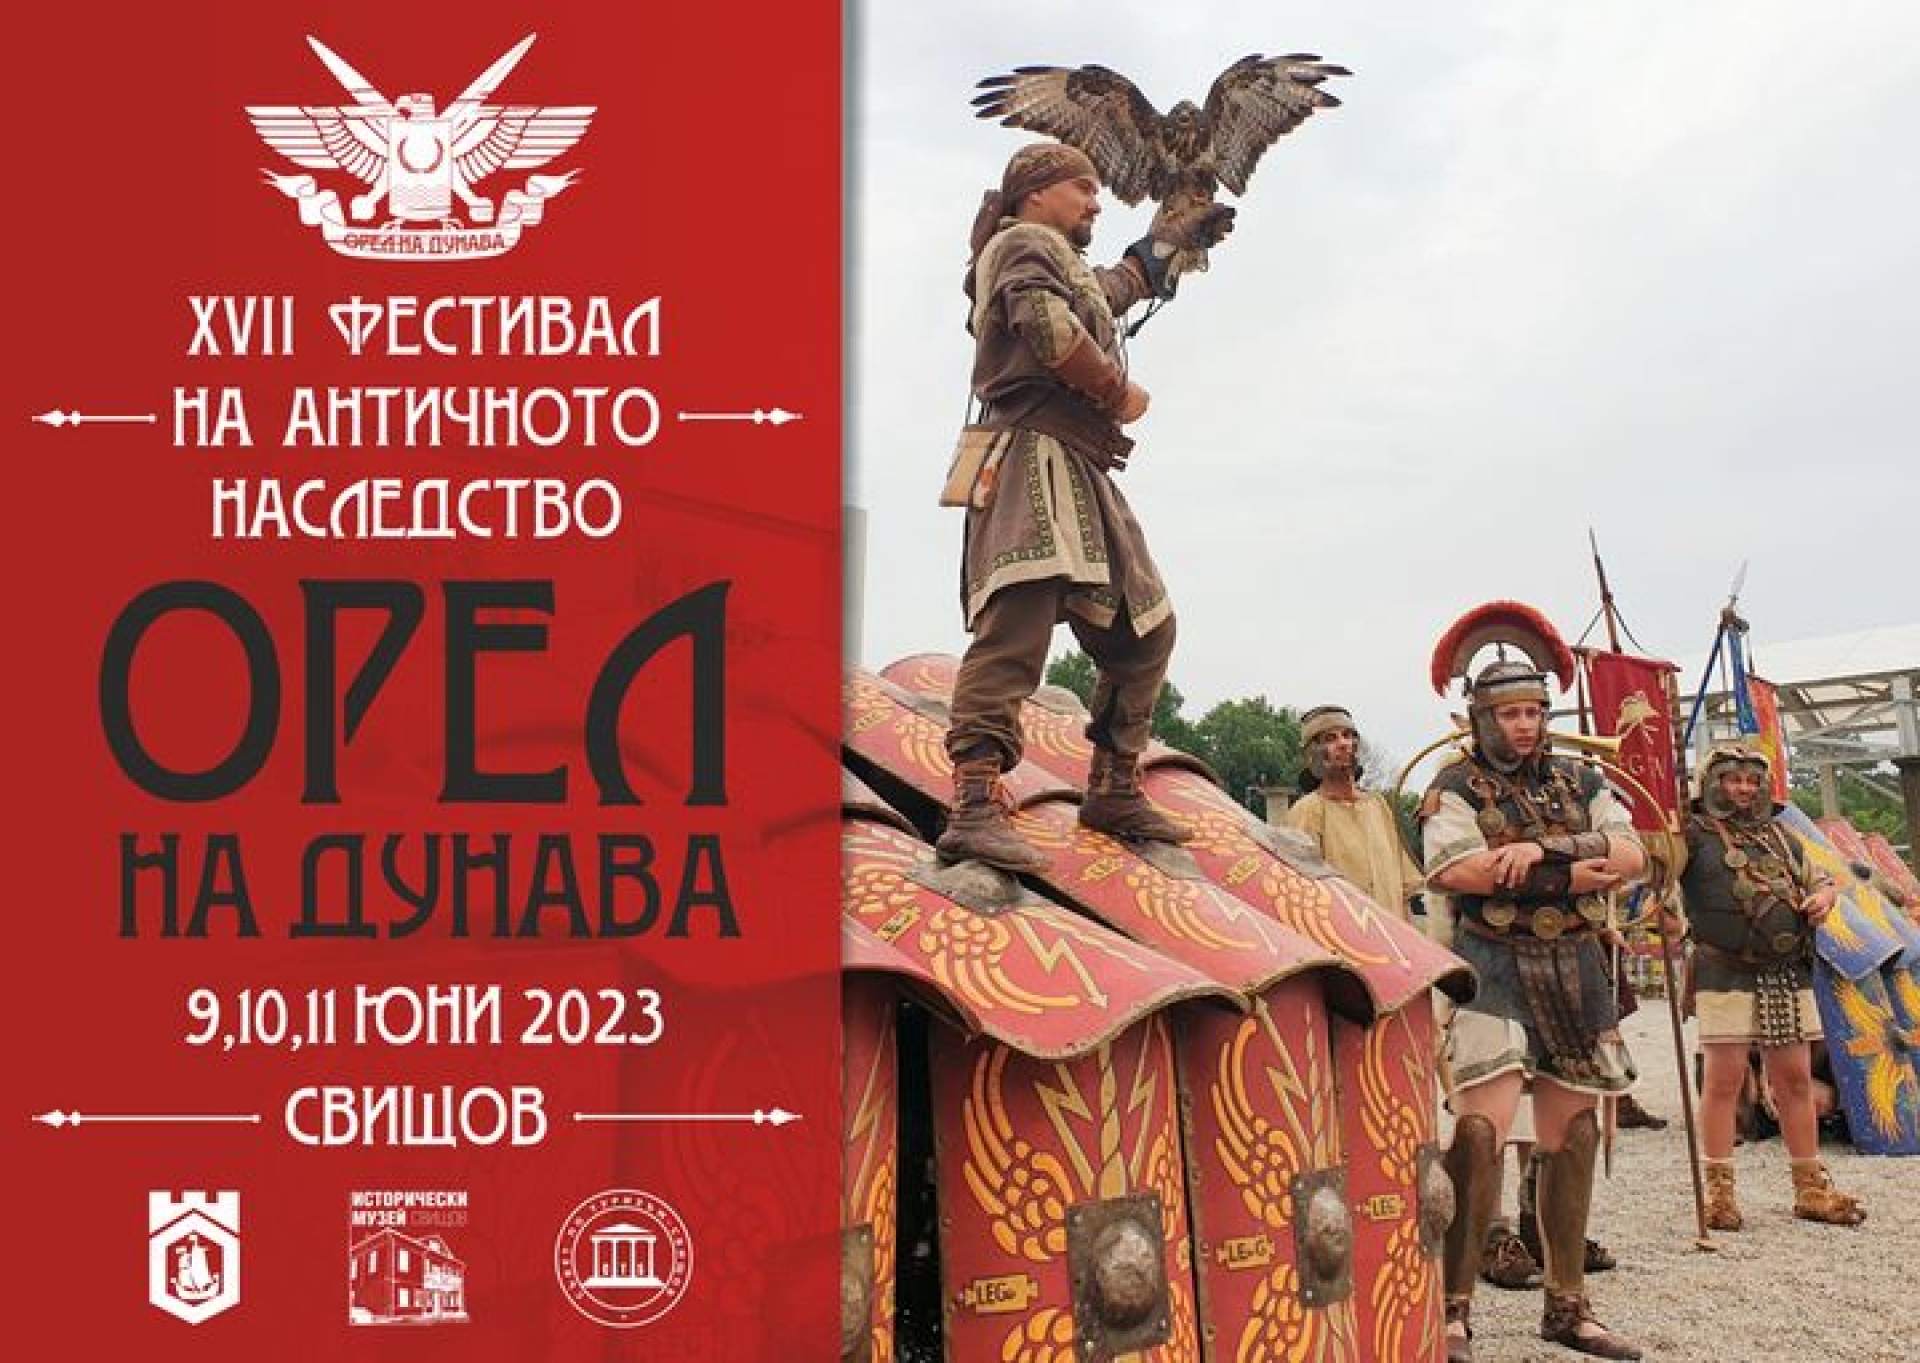 XVII фестивал на  античното наследство "Орел на Дунава"